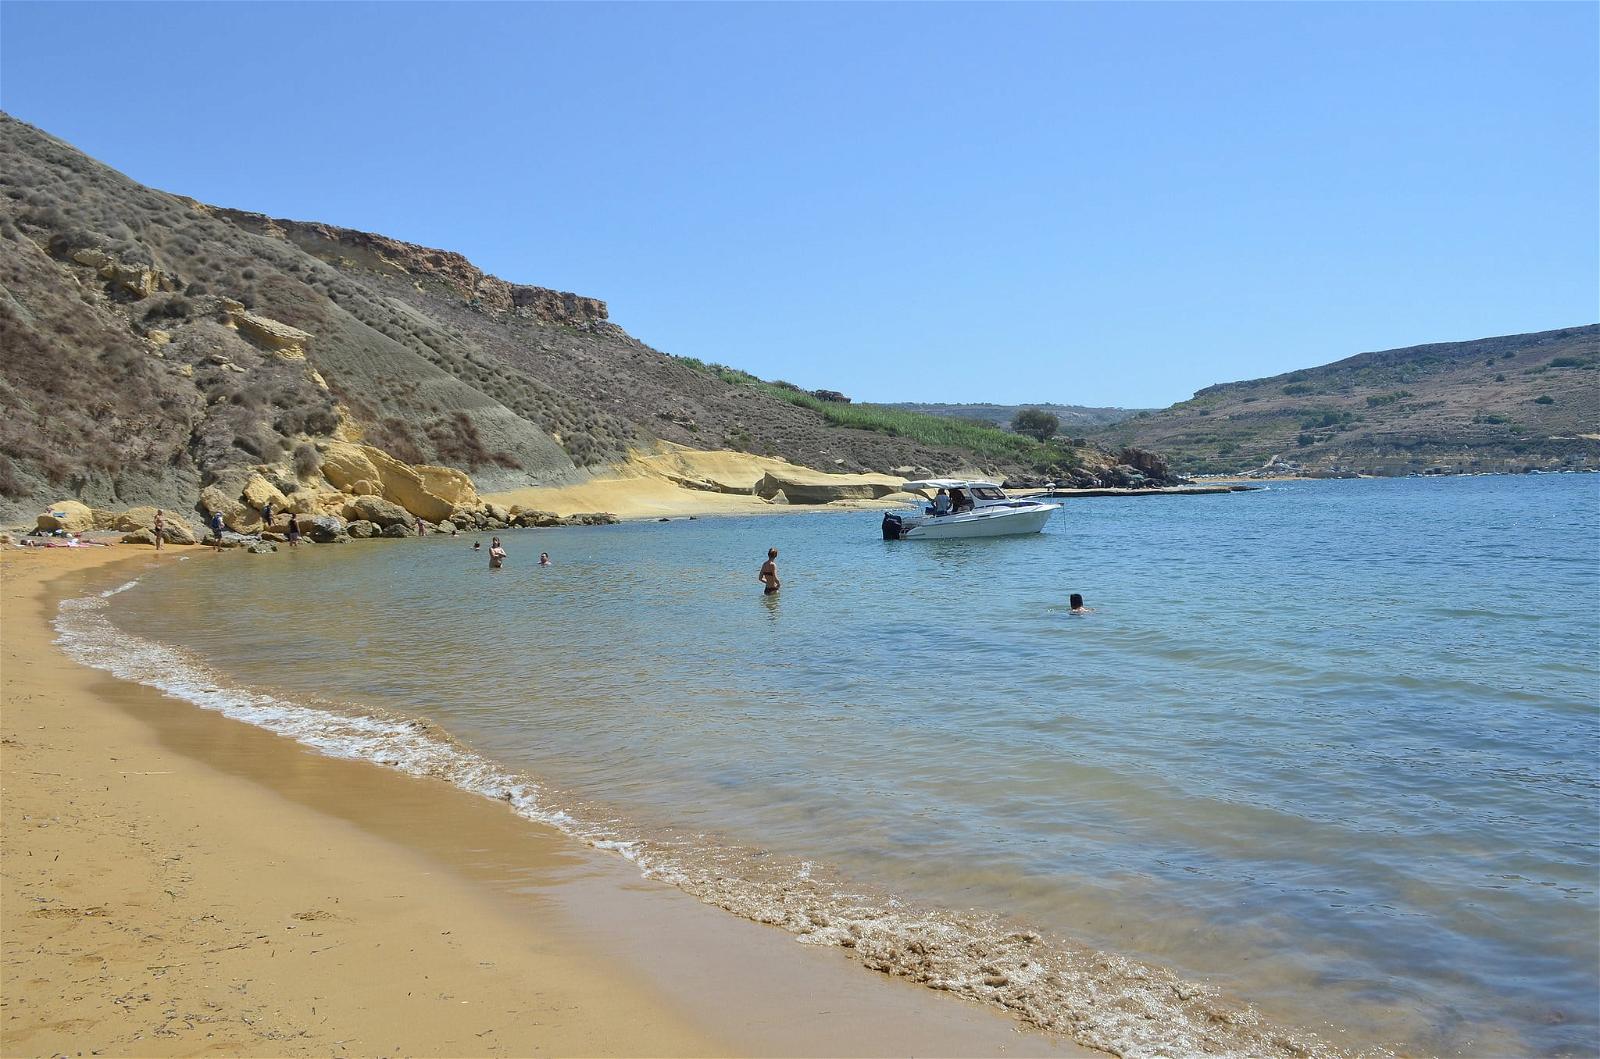 ภาพของ Għajn Tuffieħa. mer malta malte baie paradisebay méditérannée crique baymalta baieduparadis paradisemalta